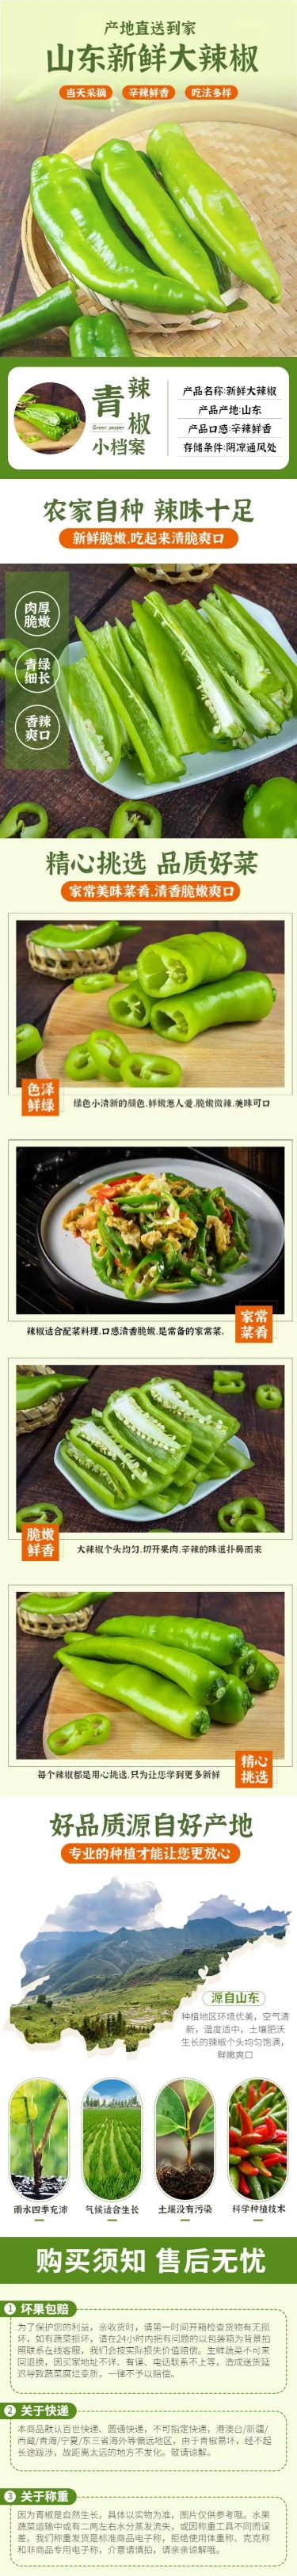 食品生鲜蔬菜青椒详情页预览效果